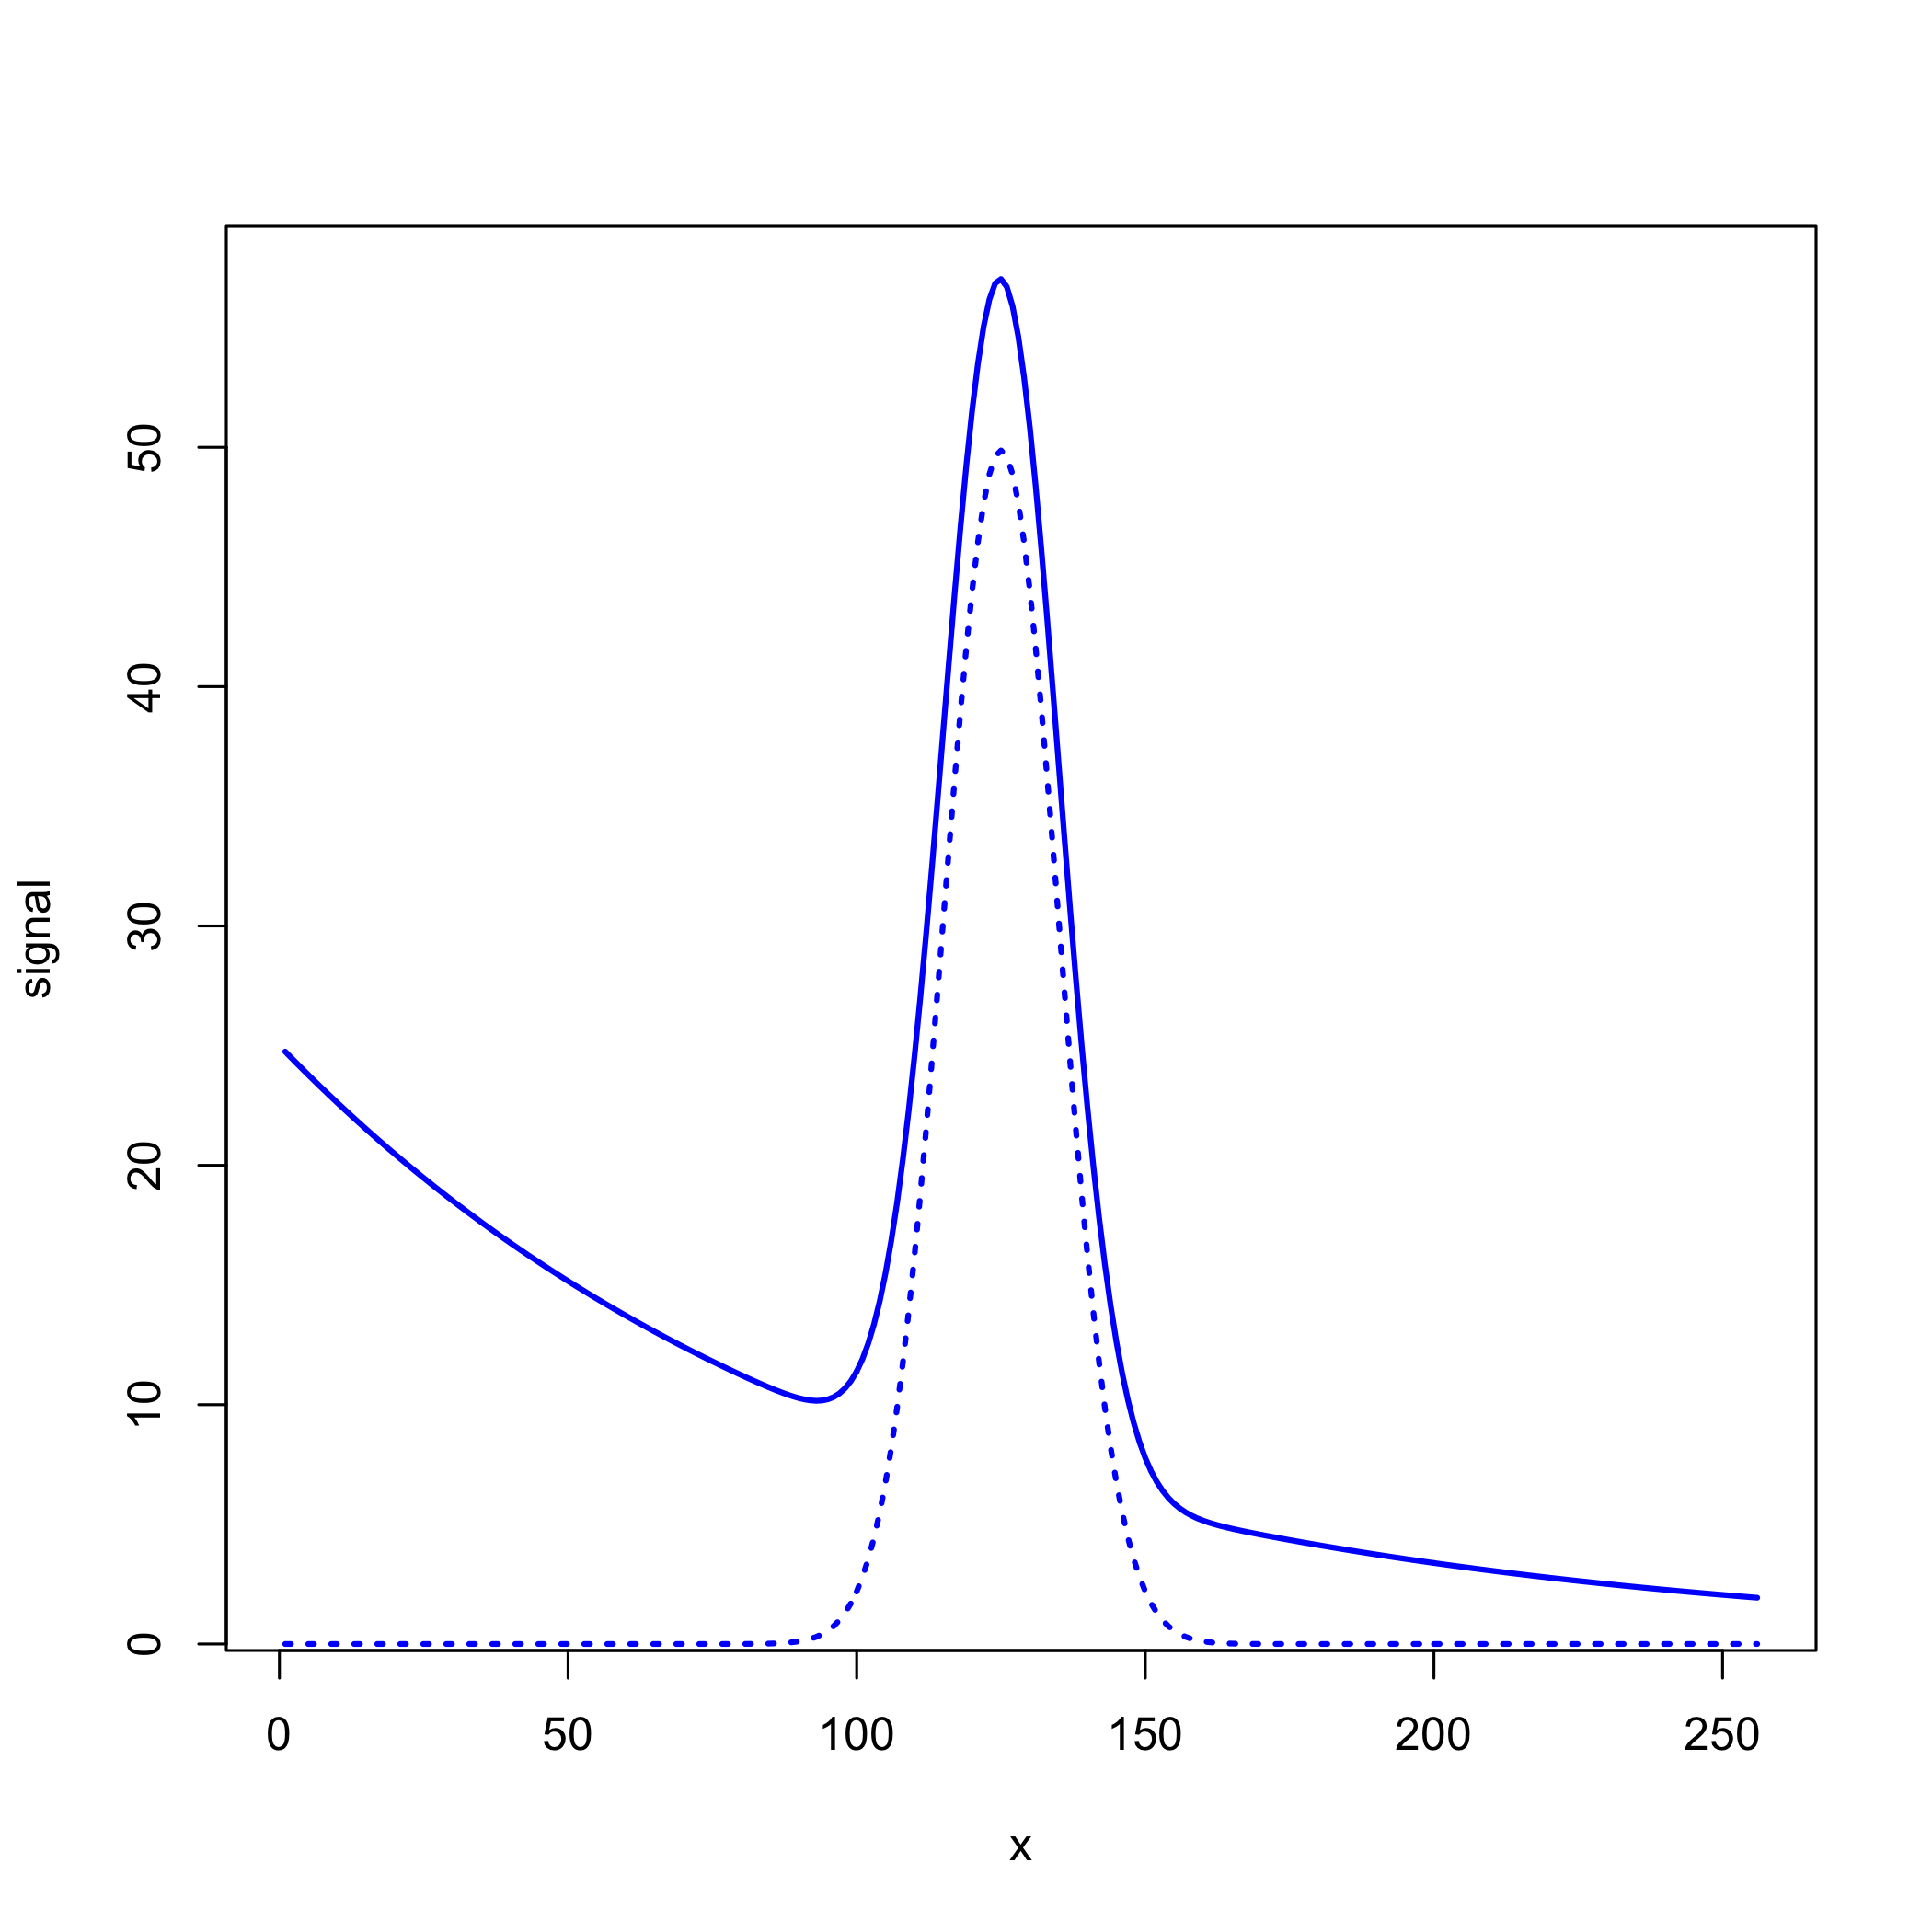 Una señal gaussiana superpuesta sobre un fondo exponencial, lo que da lugar a la señal medida.